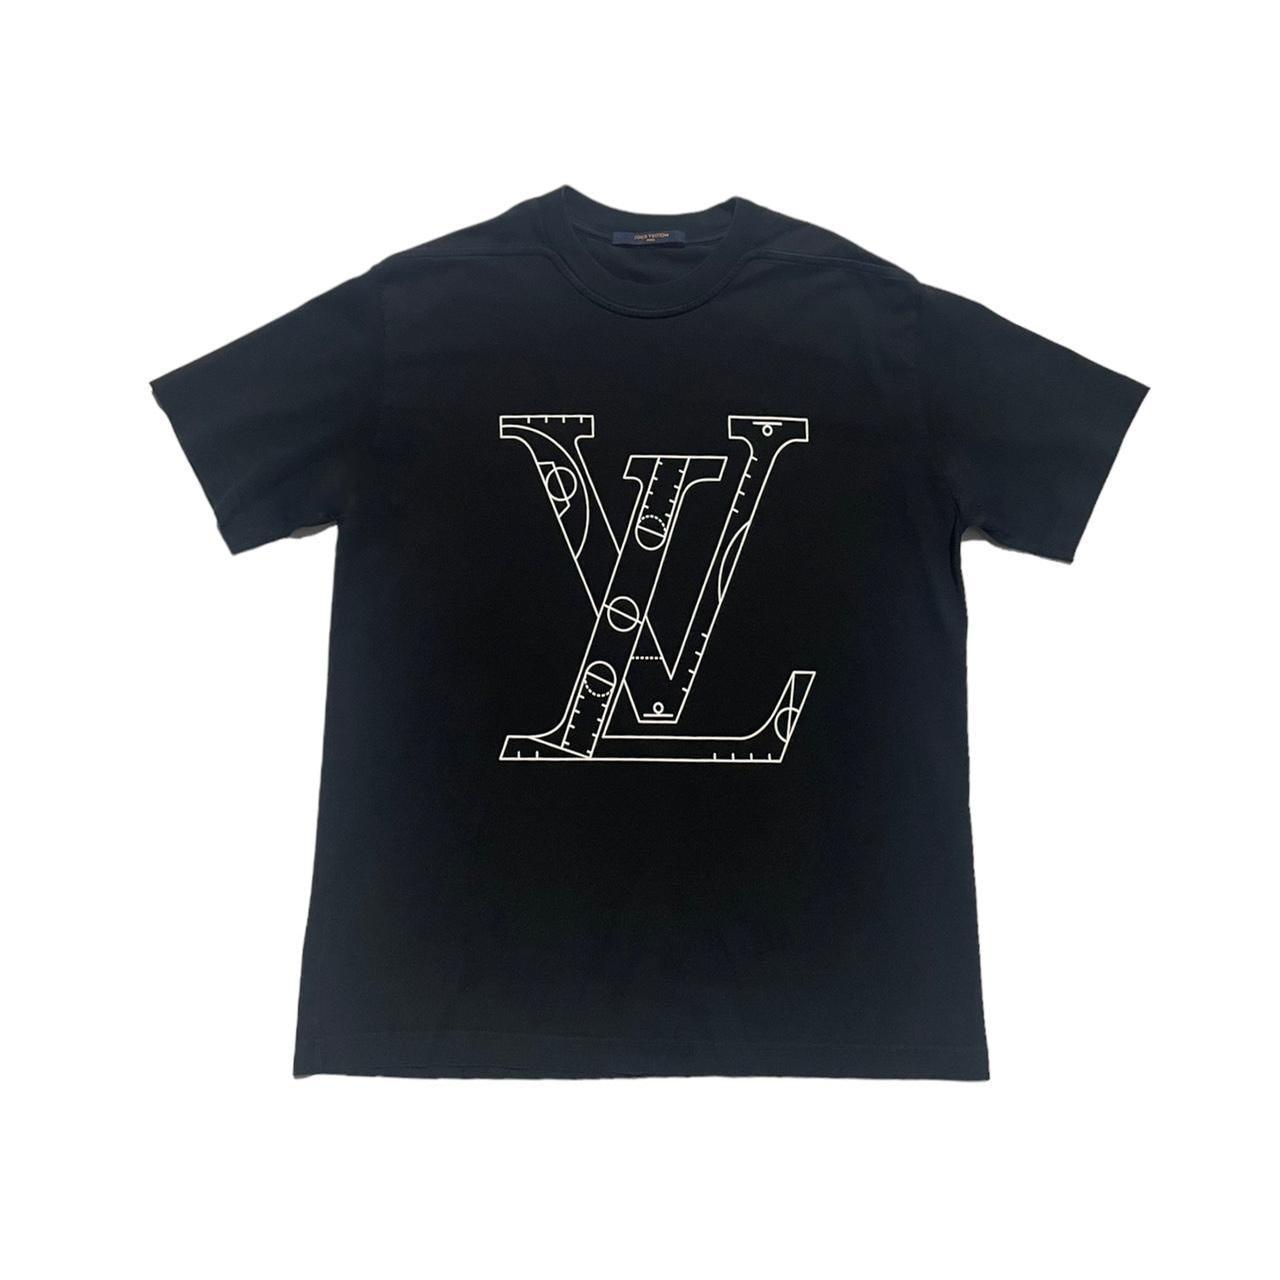 Gray Louis Vuitton T Shirt - Depop